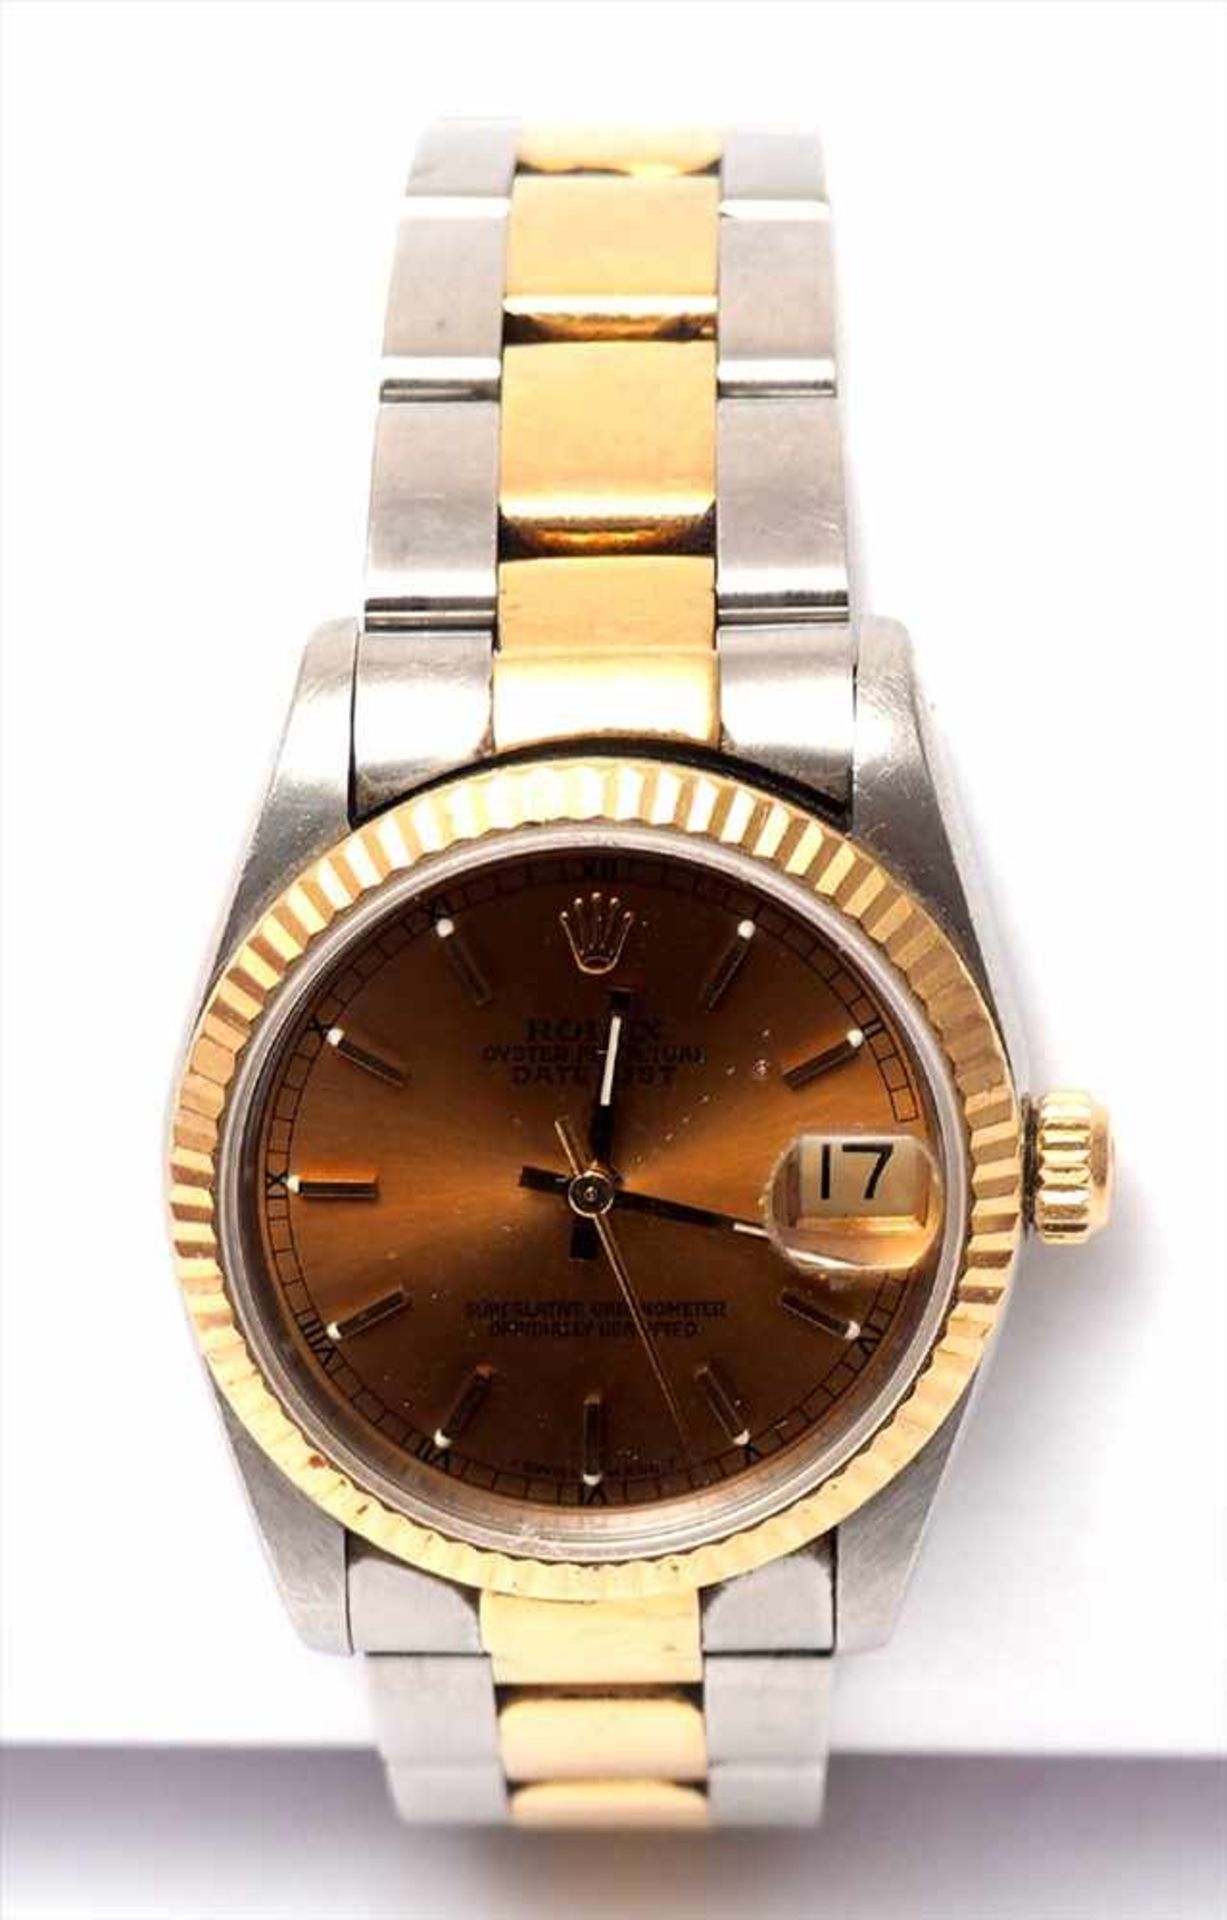 Unisex-Armbanduhr, Rolex Oyster Perpetual DatejustGoldfarbenes Zifferblatt, Datum auf der Drei, - Image 2 of 5